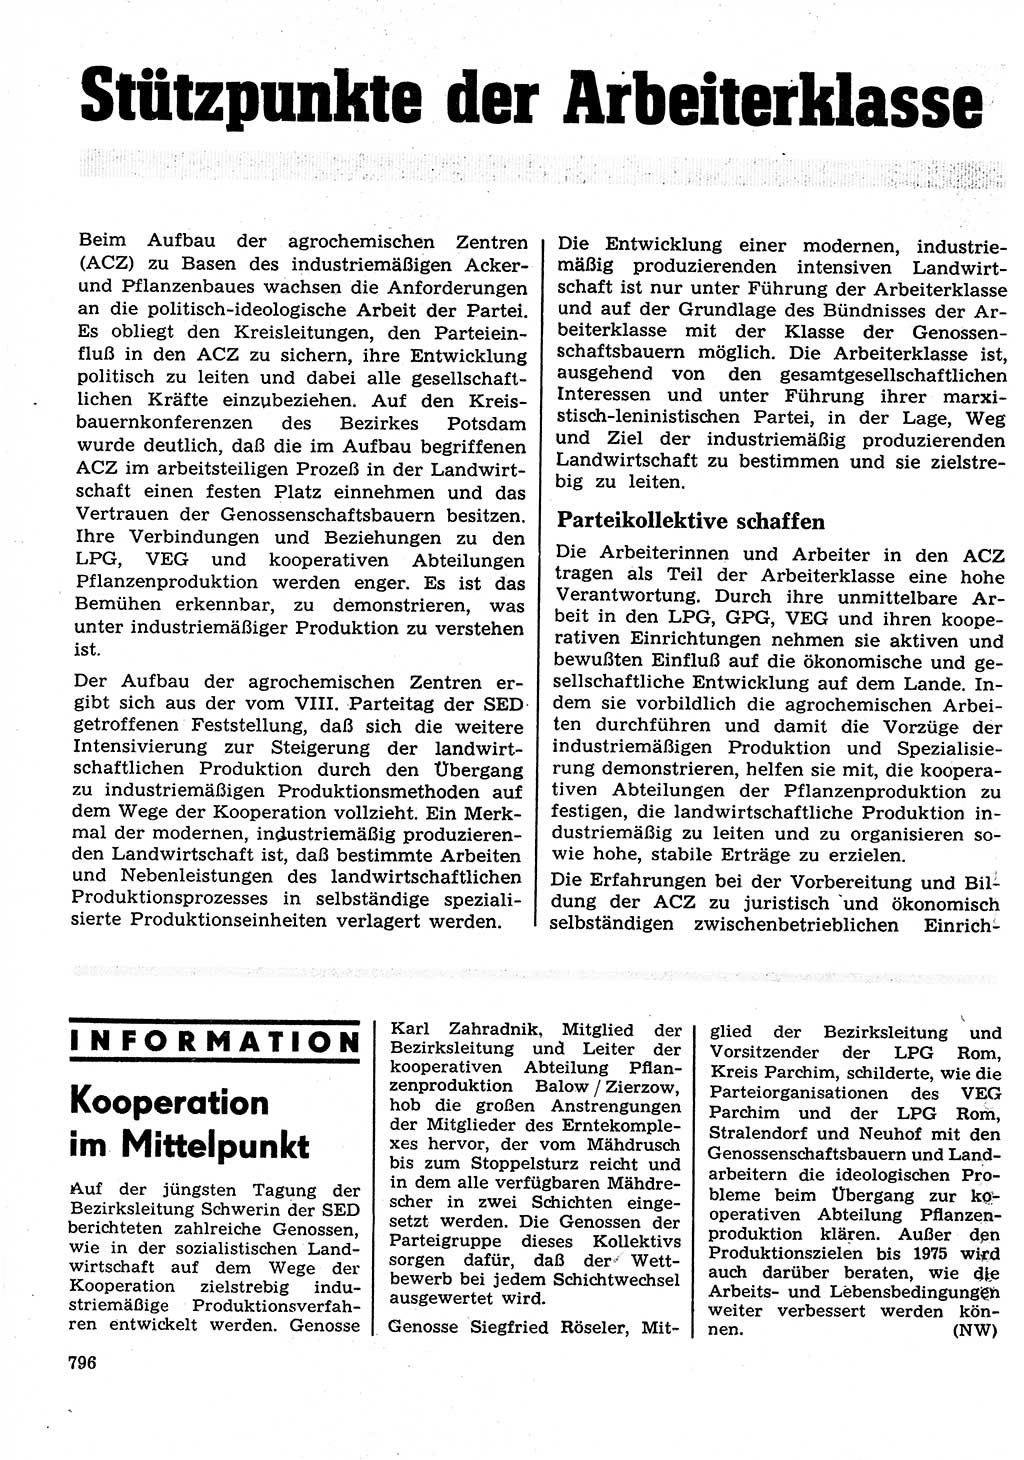 Neuer Weg (NW), Organ des Zentralkomitees (ZK) der SED (Sozialistische Einheitspartei Deutschlands) für Fragen des Parteilebens, 27. Jahrgang [Deutsche Demokratische Republik (DDR)] 1972, Seite 796 (NW ZK SED DDR 1972, S. 796)